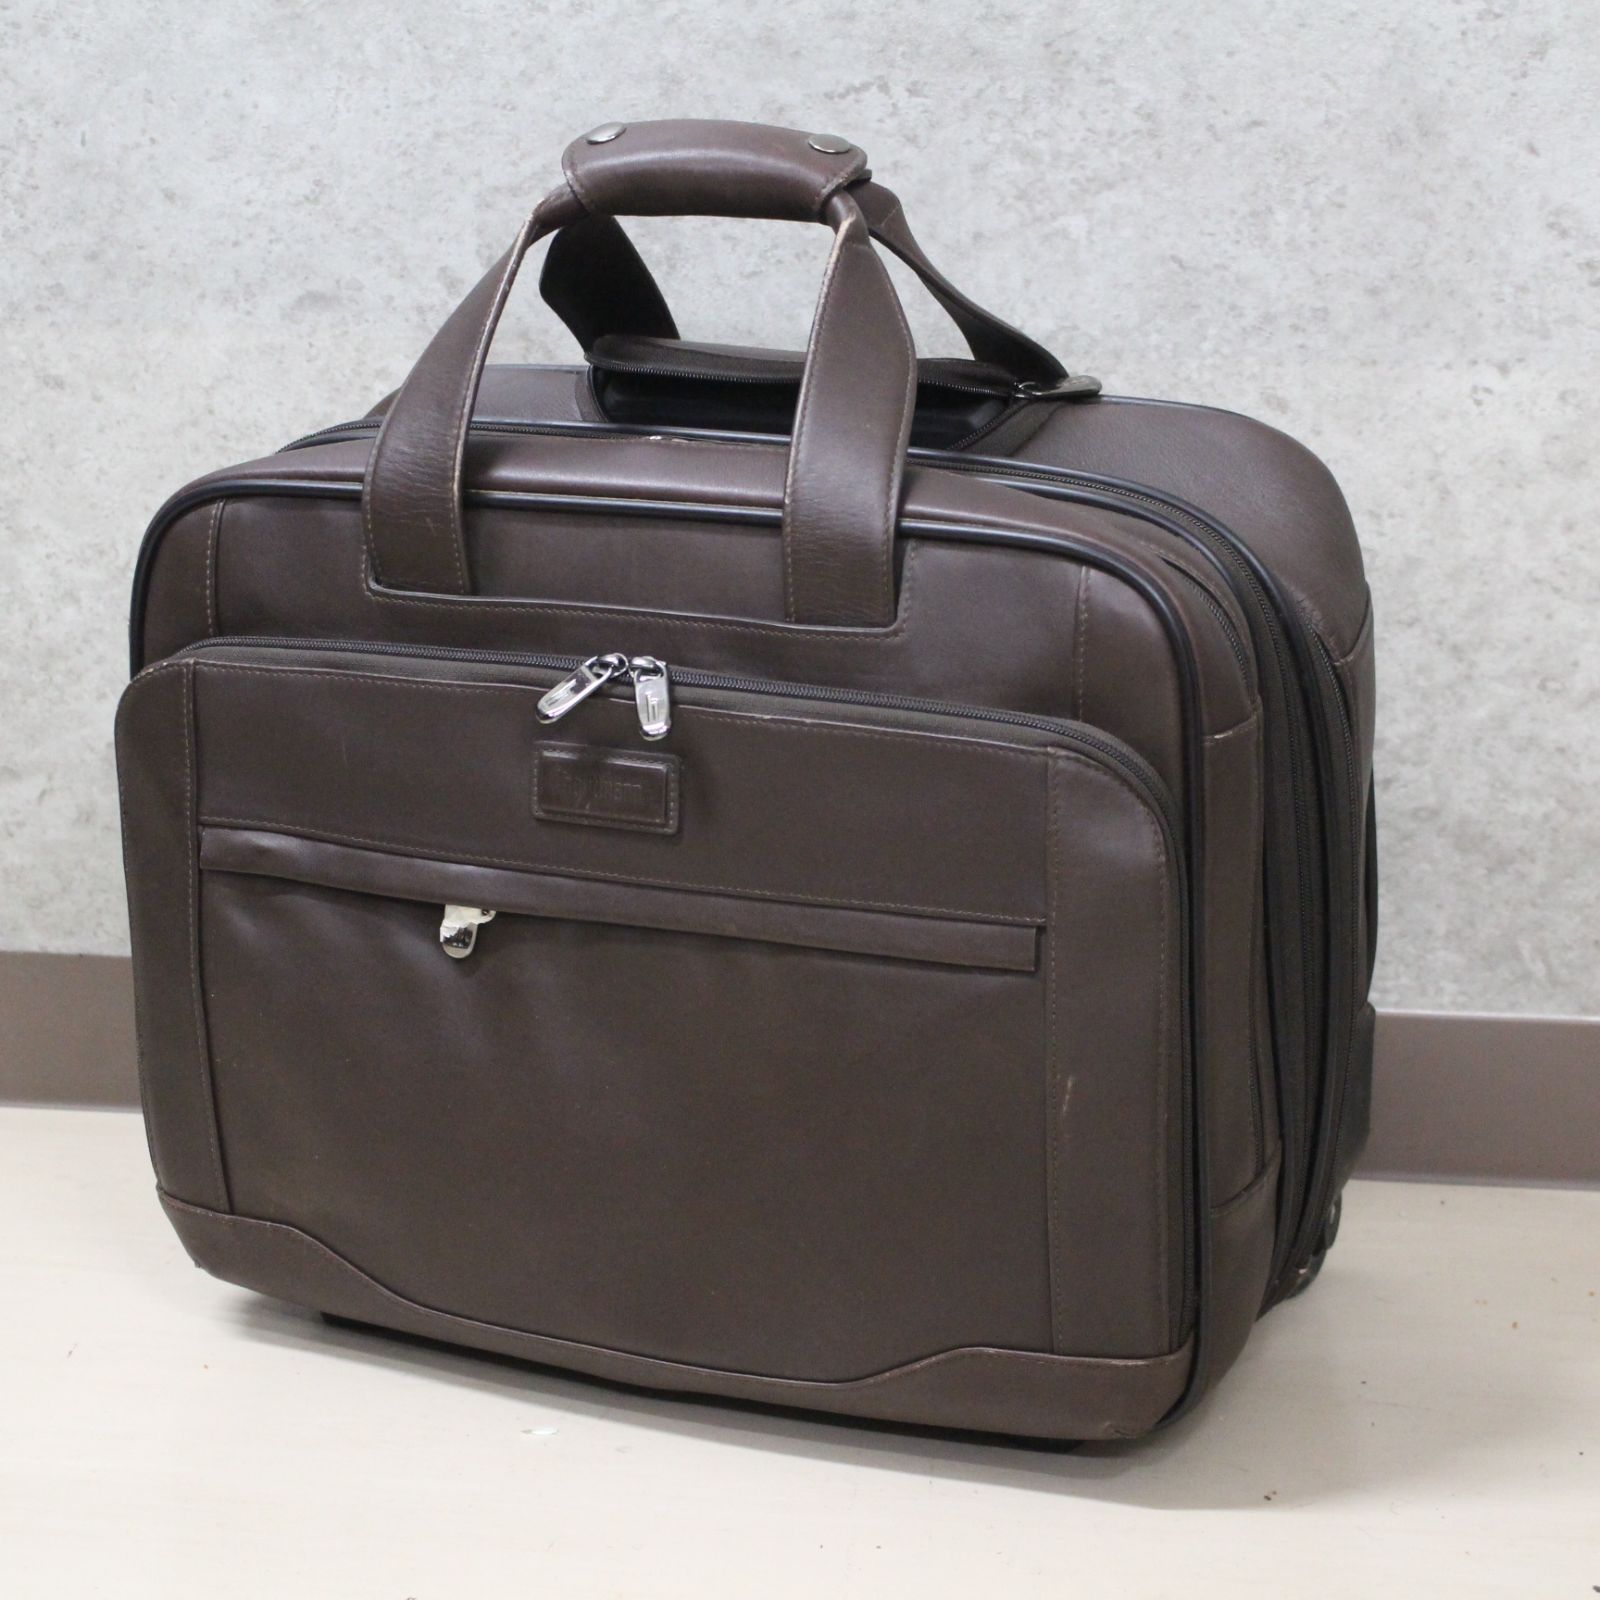 S182)hartmann/ハートマン ビジネスバッグ キャリーケース スーツケース 2輪 レザー ダークブラウン メンズ